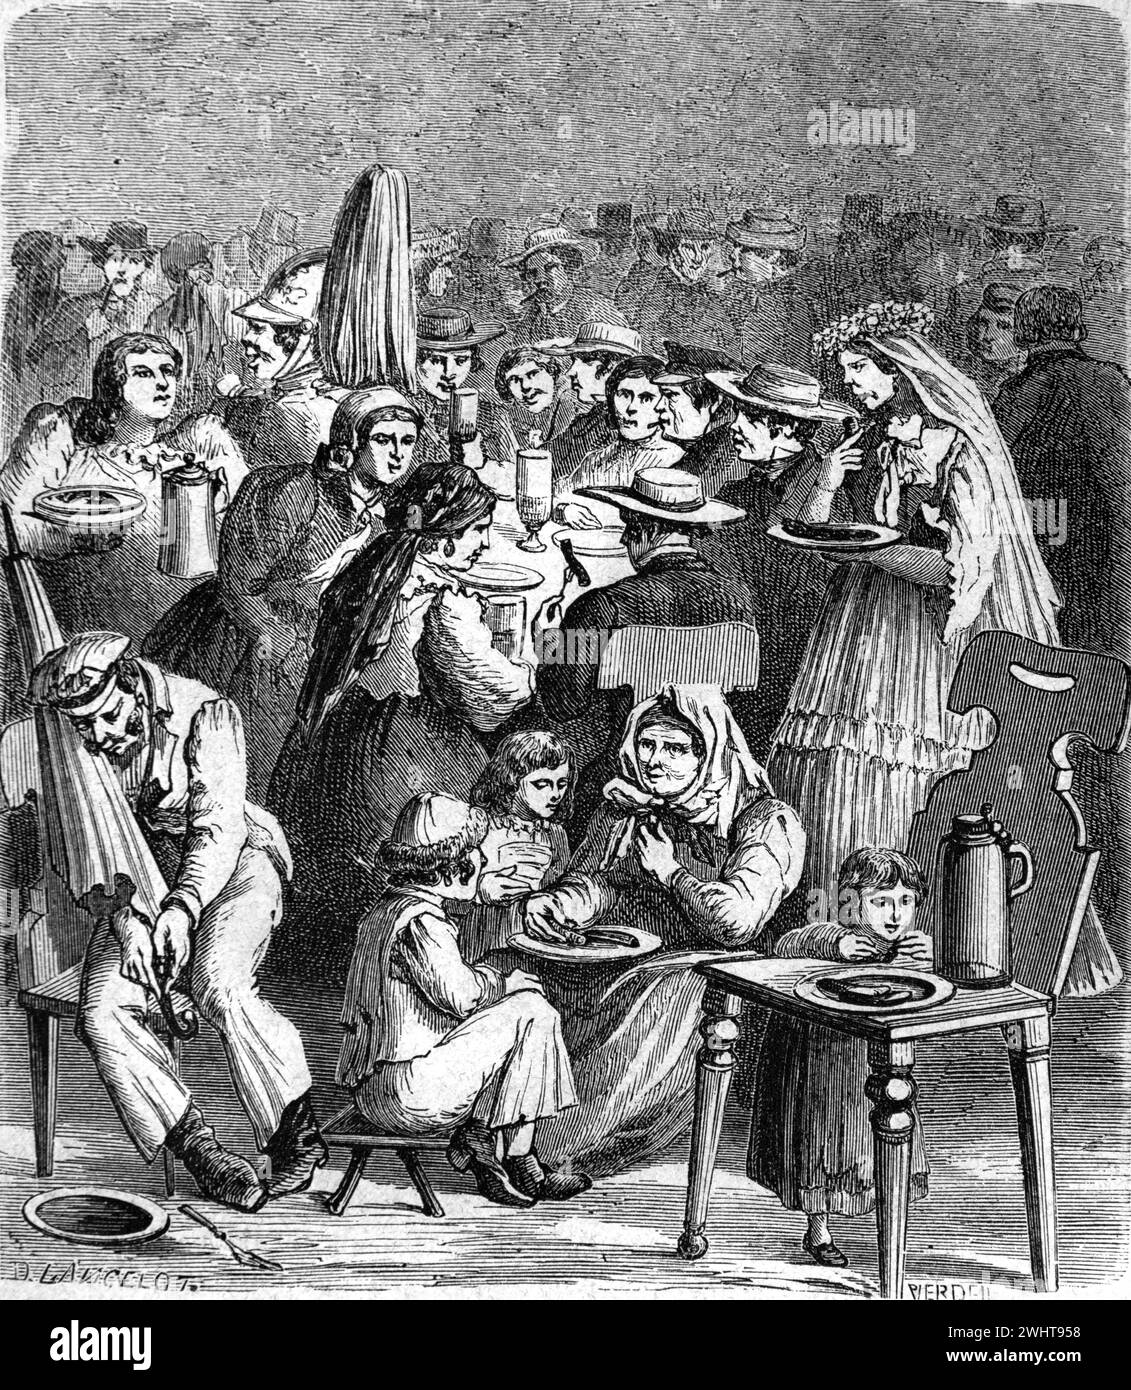 Alemanes comiendo en sopa de cocina o restaurante social en Ratisbona, anteriormente Ratisbon, Hospital Baviera Alemania. Vintage o grabado histórico o ilustración 1863 Foto de stock